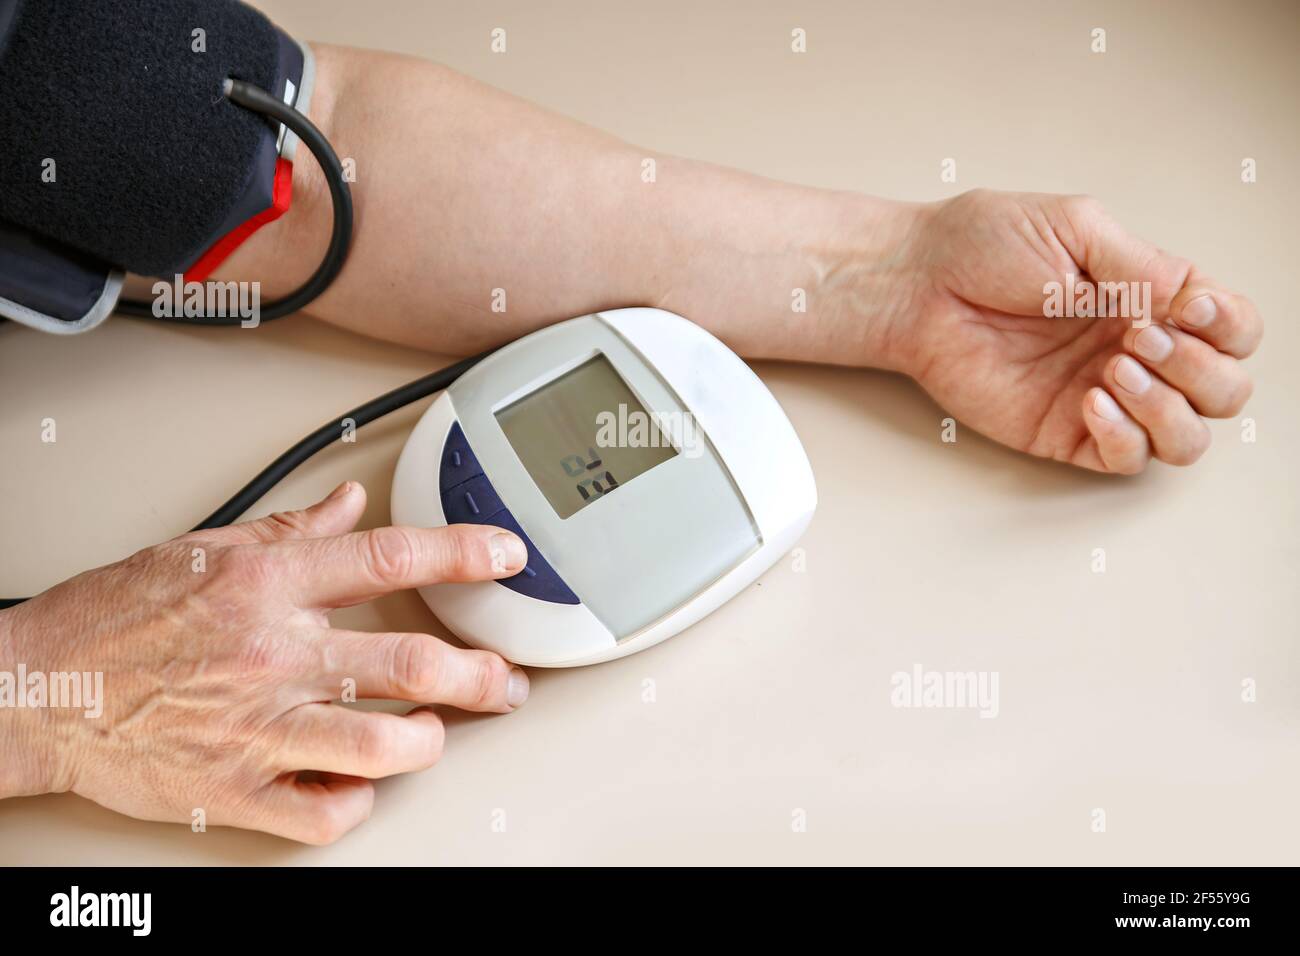 La pressione sanguigna controlla il tonometro man. Le mani e il dispositivo si trovano su un tavolo luminoso. Foto Stock